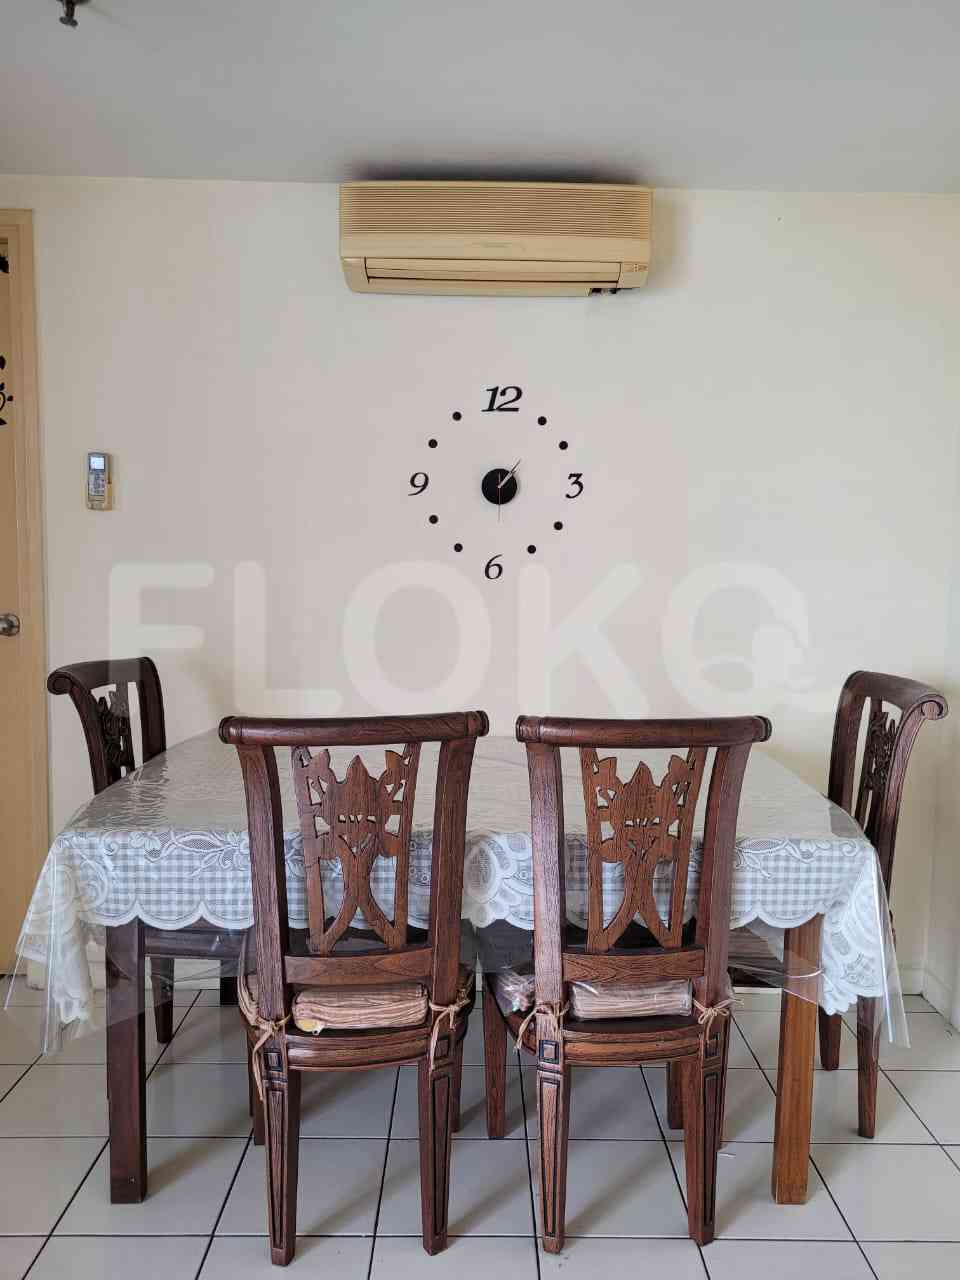 2 Bedroom on 23rd Floor for Rent in Taman Rasuna Apartment - fku9de 10